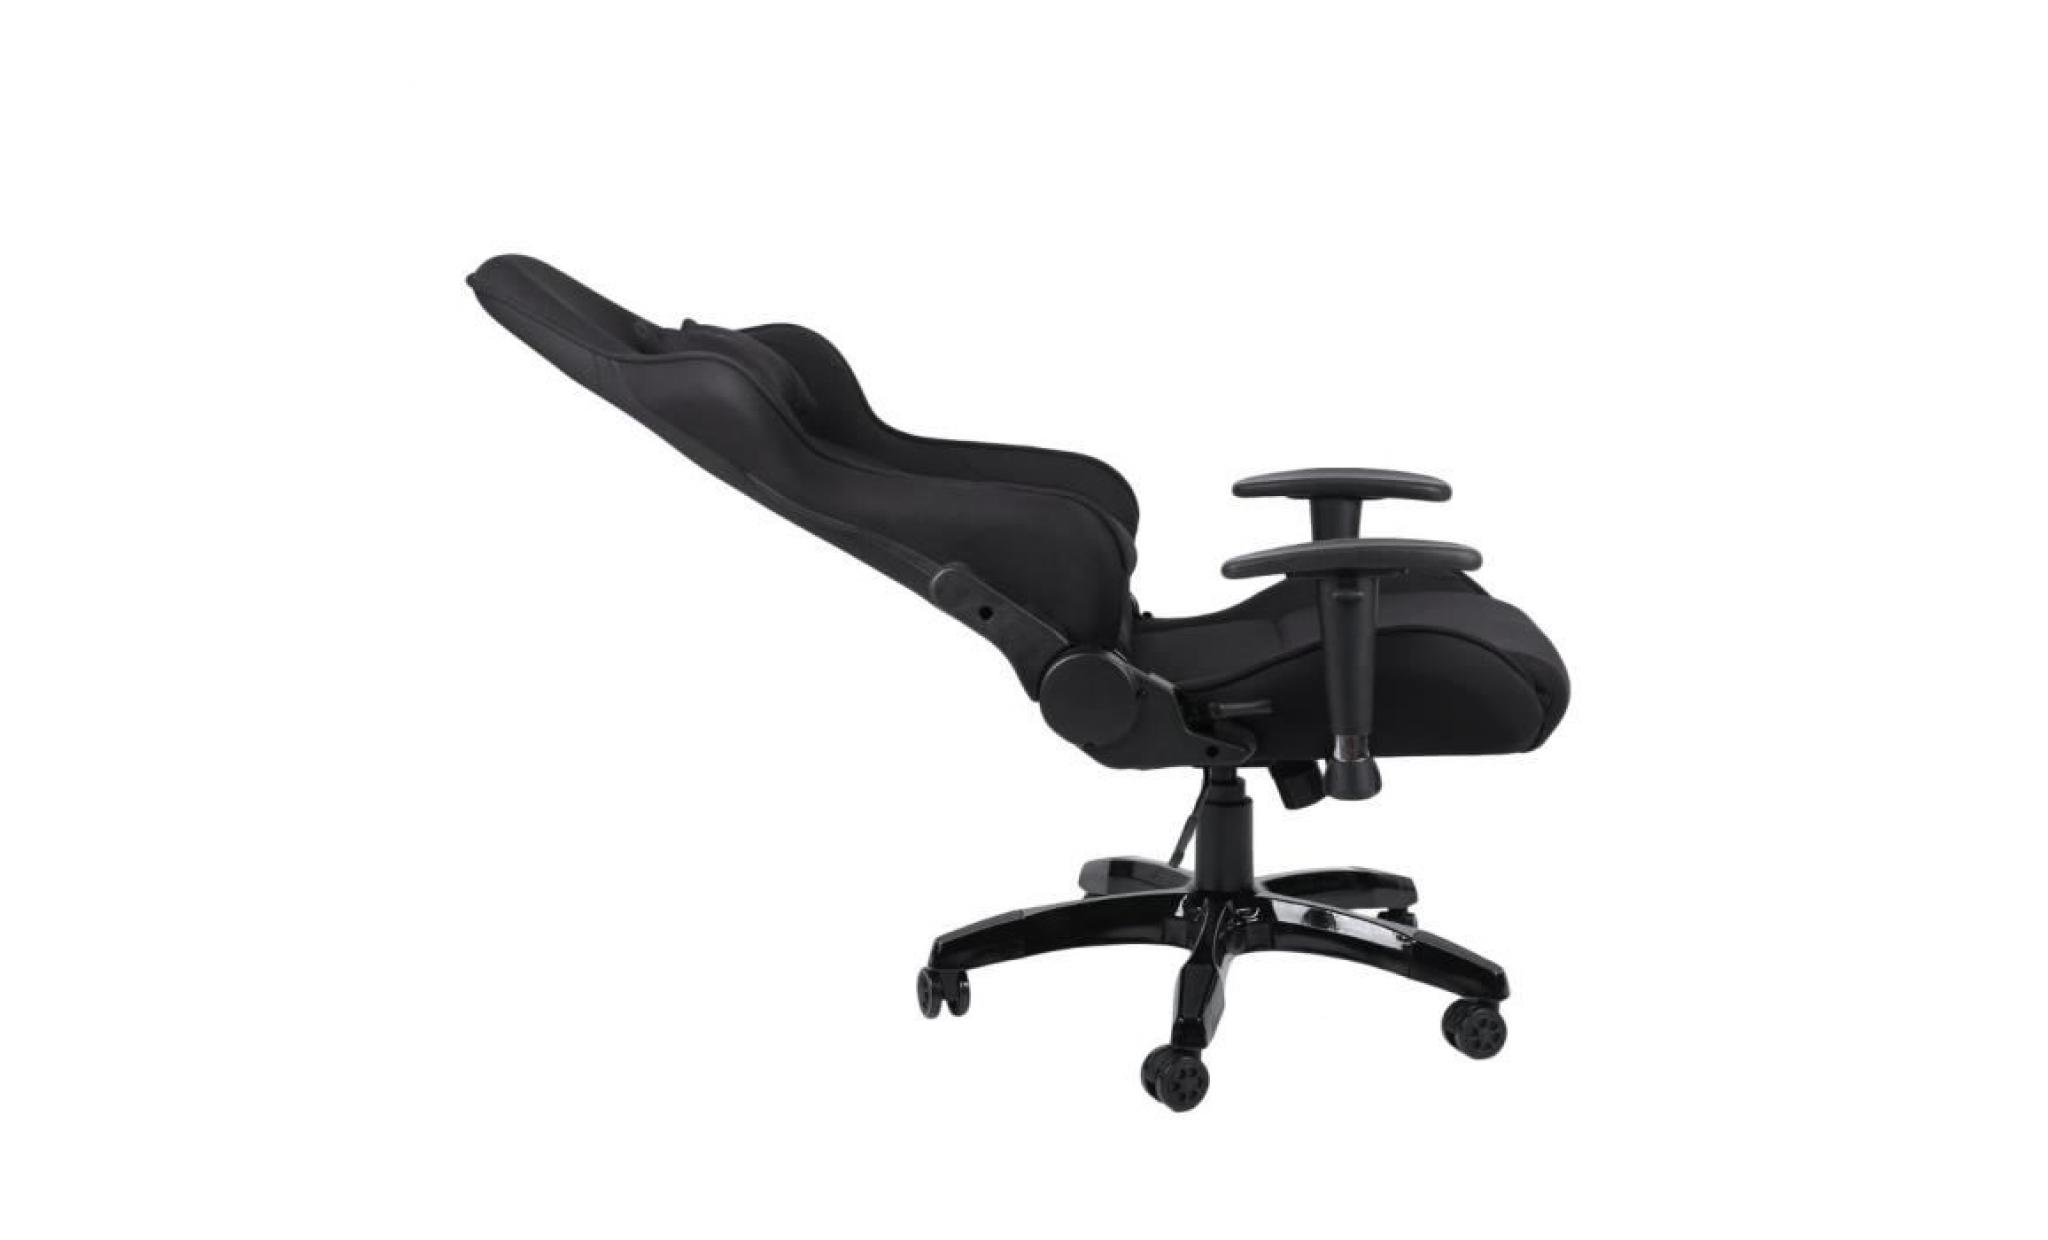 leshp® fauteuil de bureau façon siège baquet rallye en tissu noir pas cher